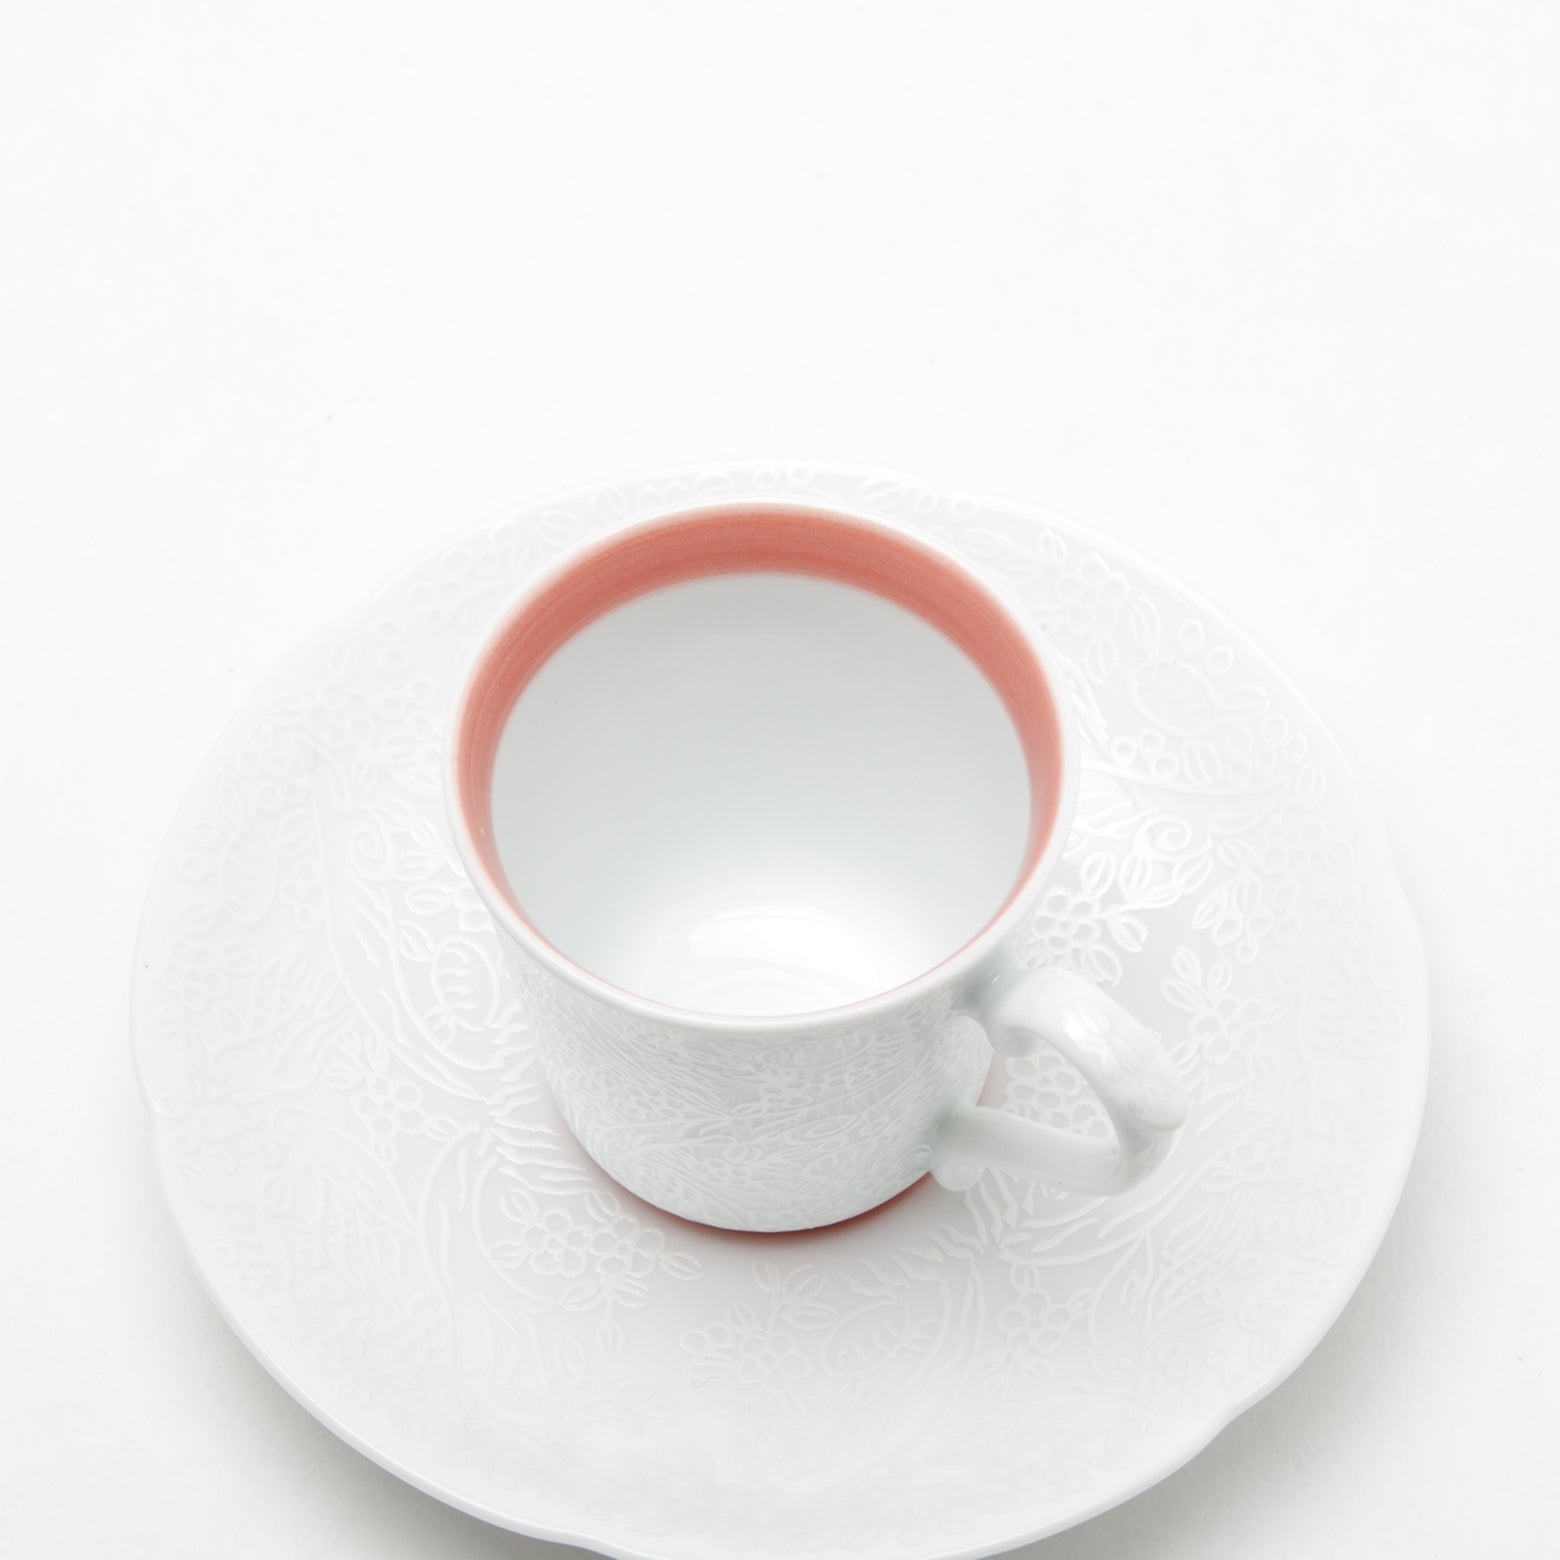 有田焼 錦銀 ペルシャ緋色巻 エスプレッソ碗皿 60ml/11.5cm Kouraku コーヒーカップ Studio1156